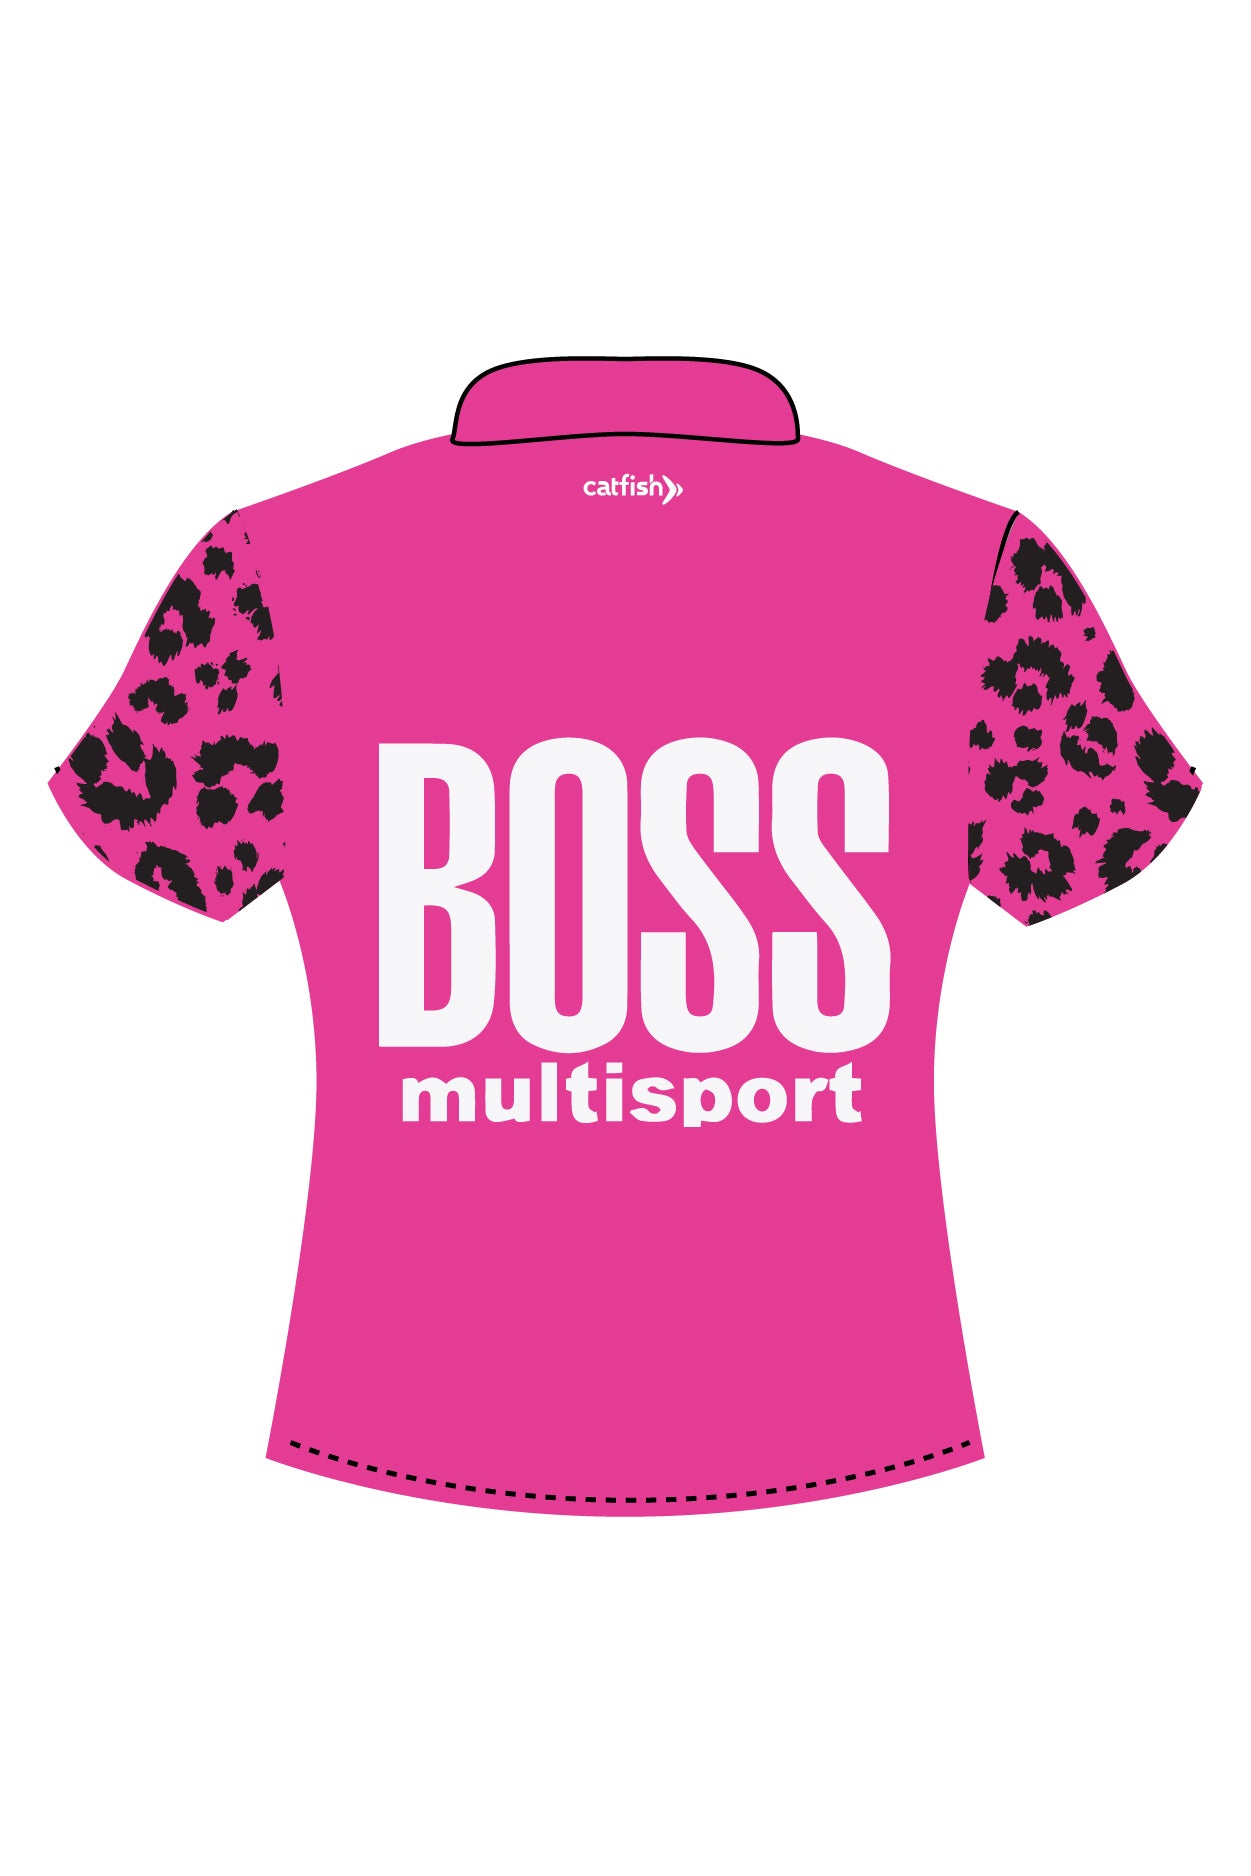 Boss Multisport Women's Sports Polo